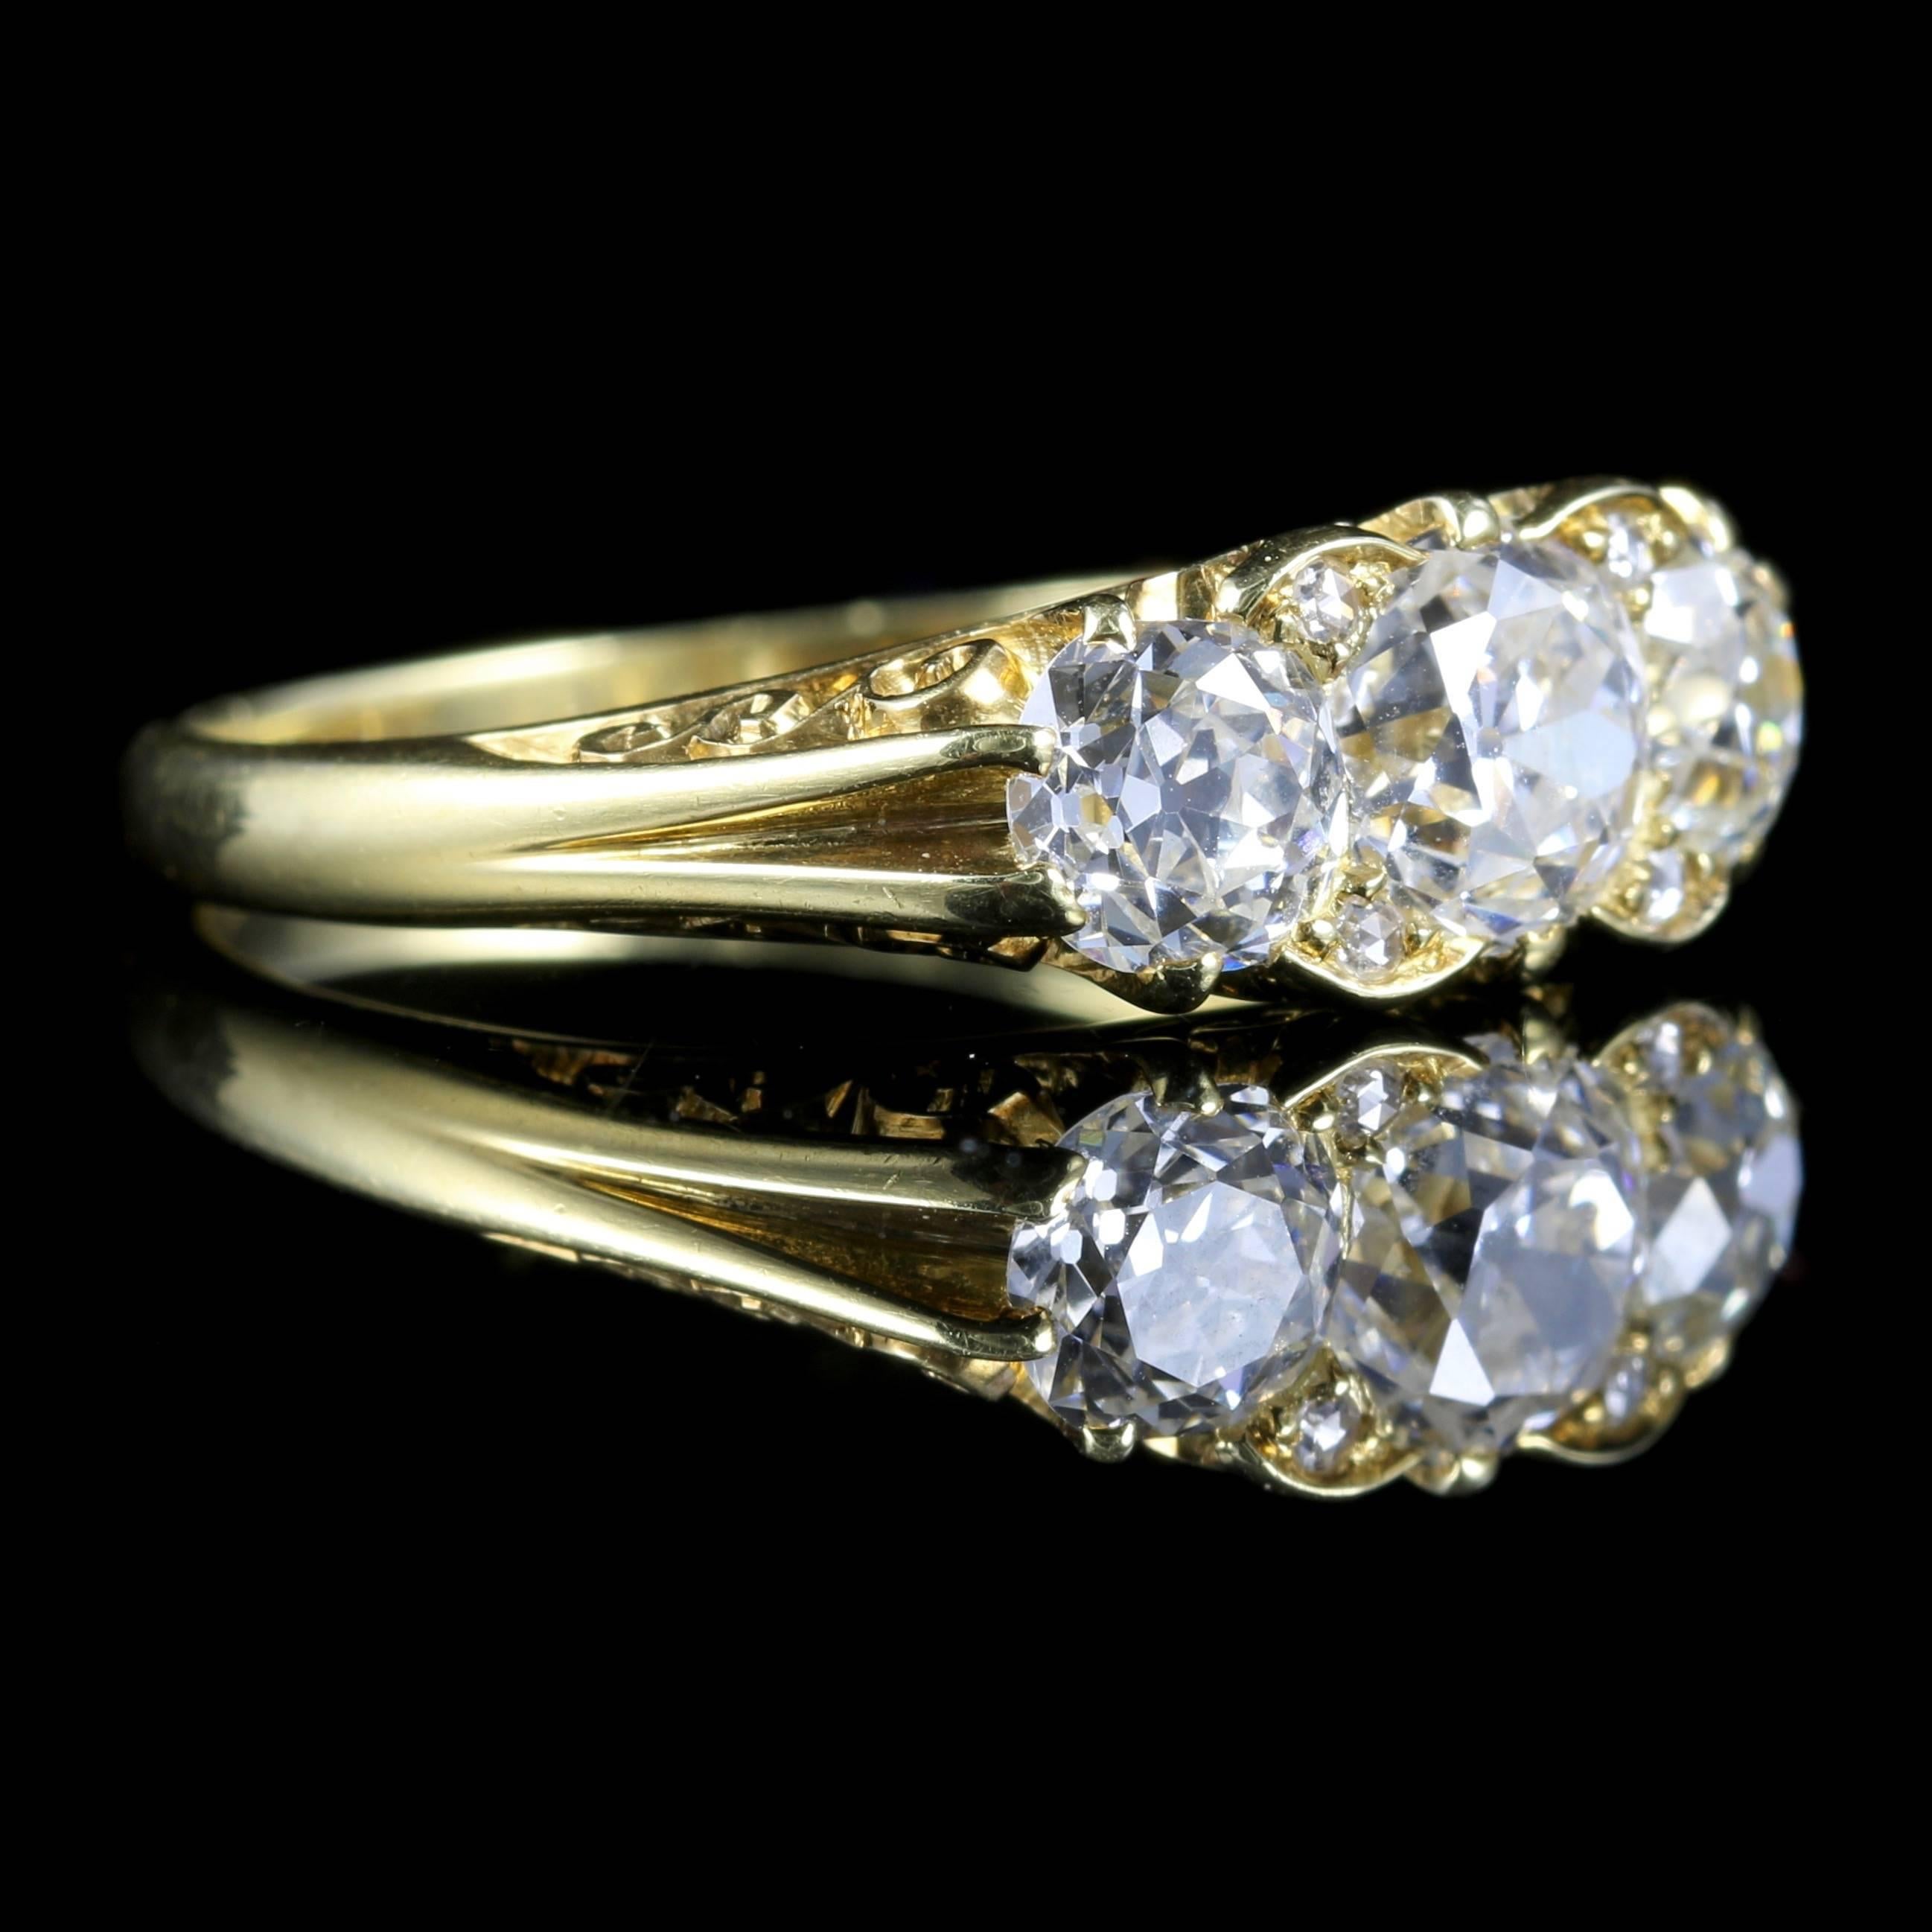 2 carat trilogy diamond ring